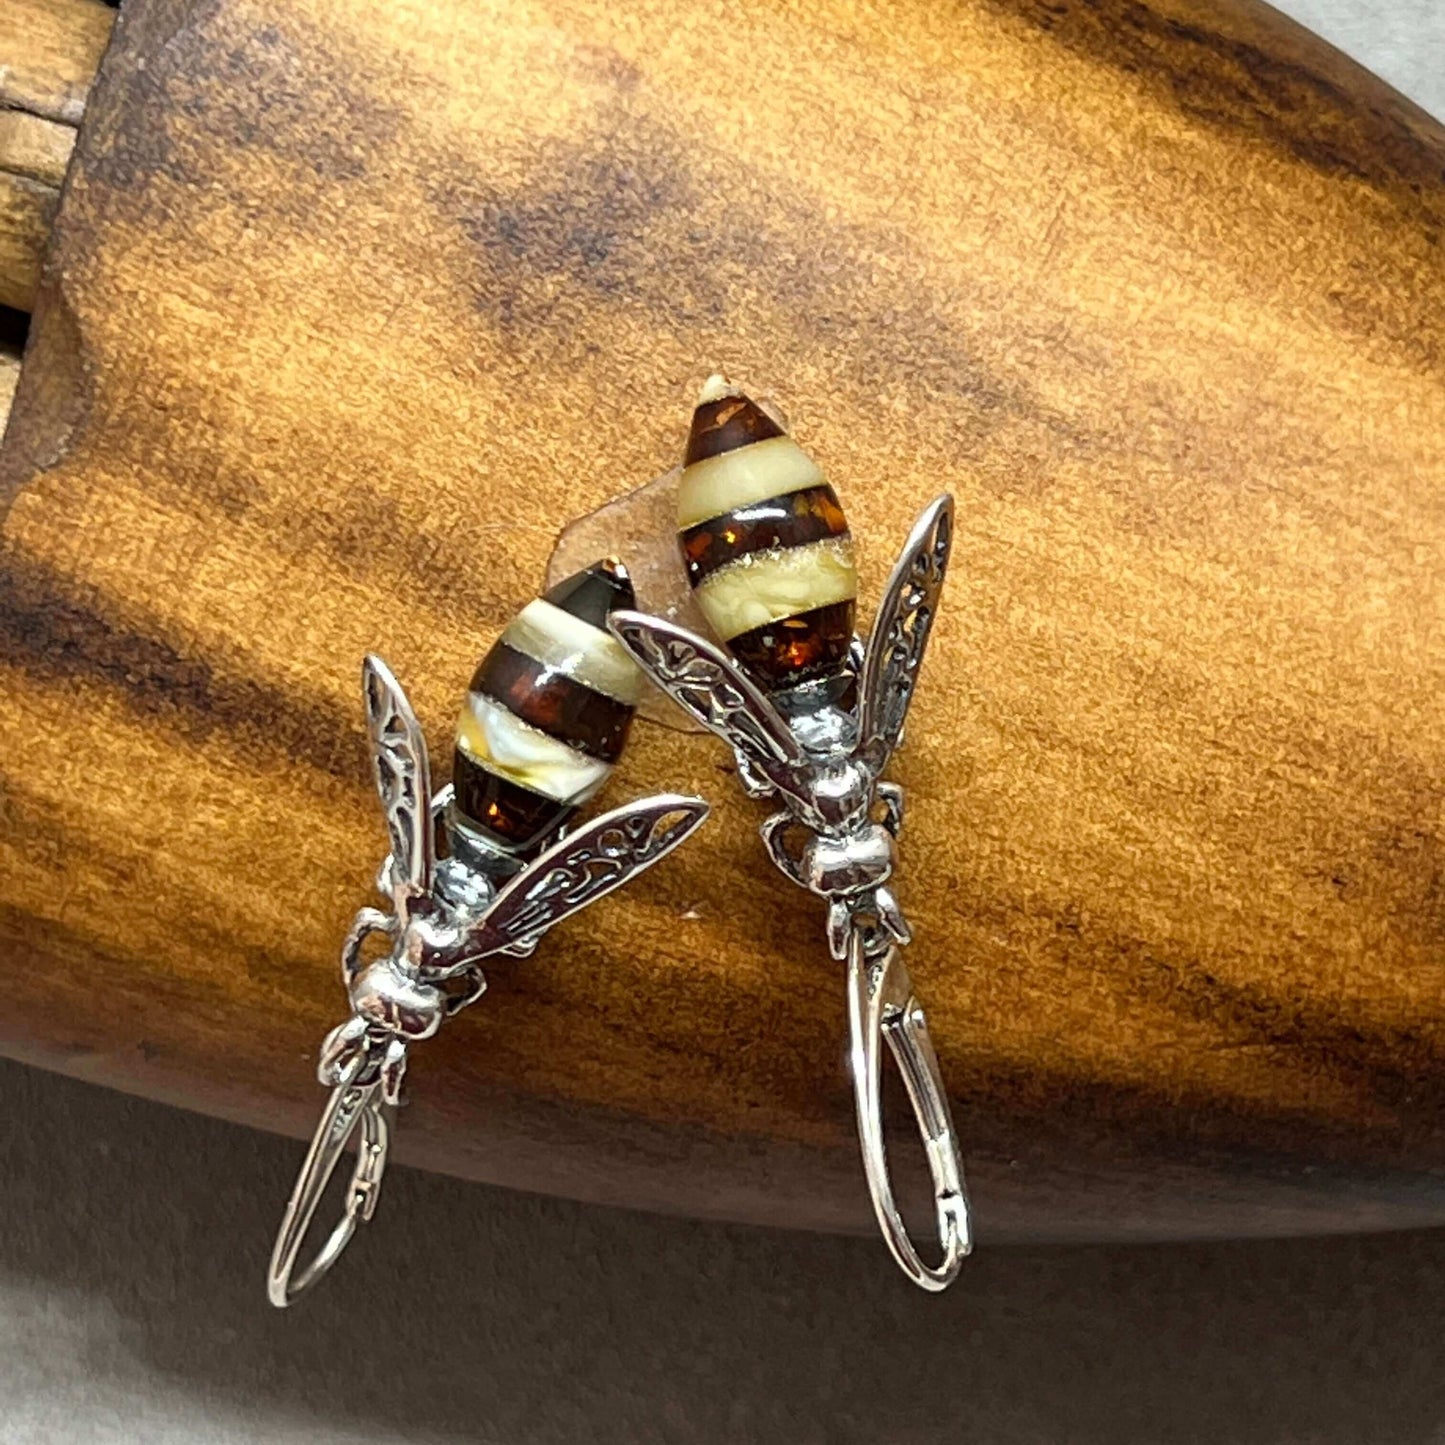 Baltic Amber Medium Bee Sterling Silver Drop Earrings - Twelve Silver Trees